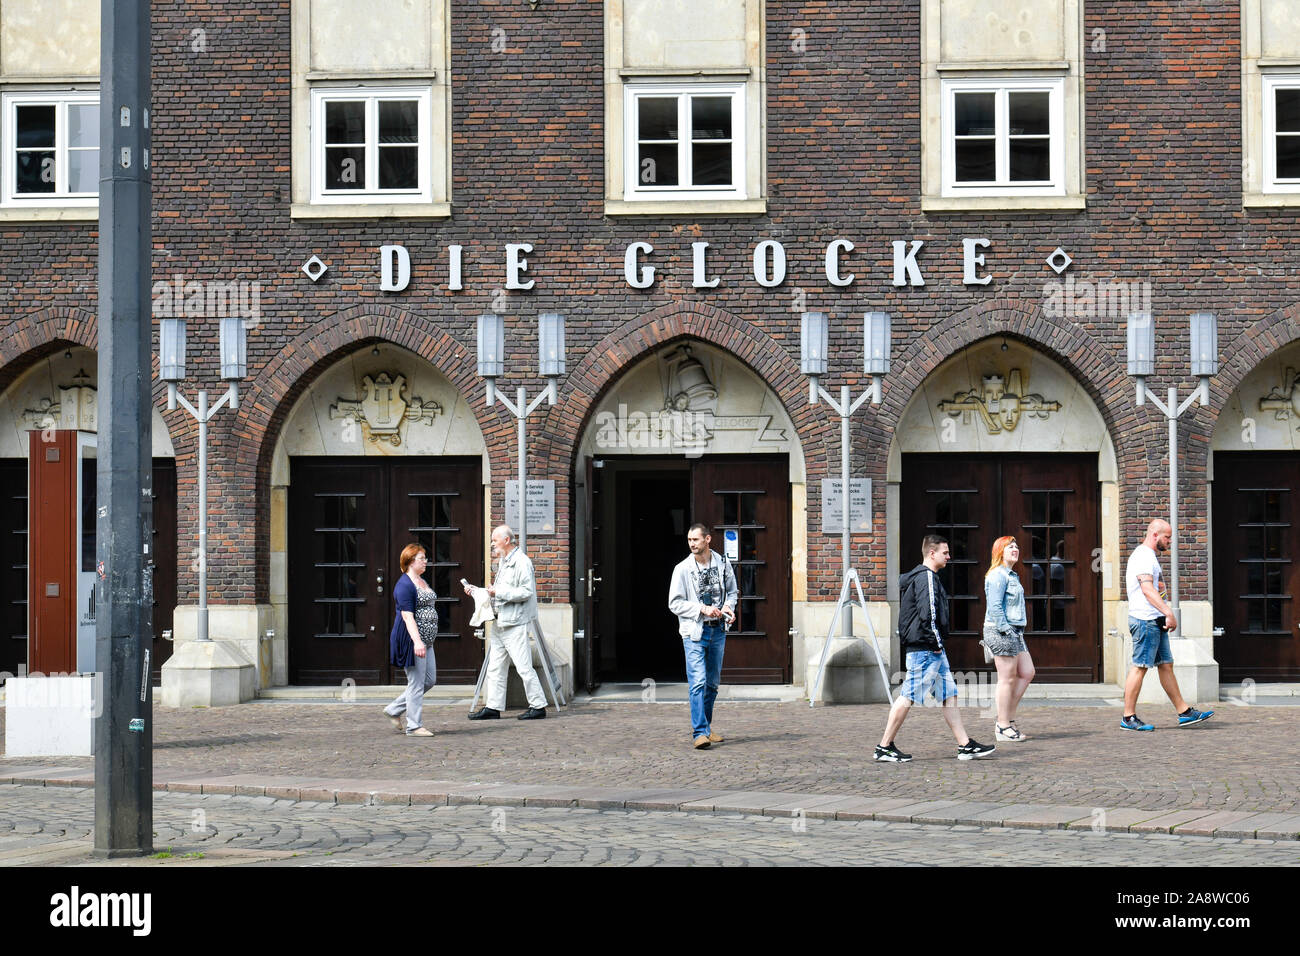 Konzerthaus 'Die Glocke', Domsheide, Bremen, Deutschland Stock Photo